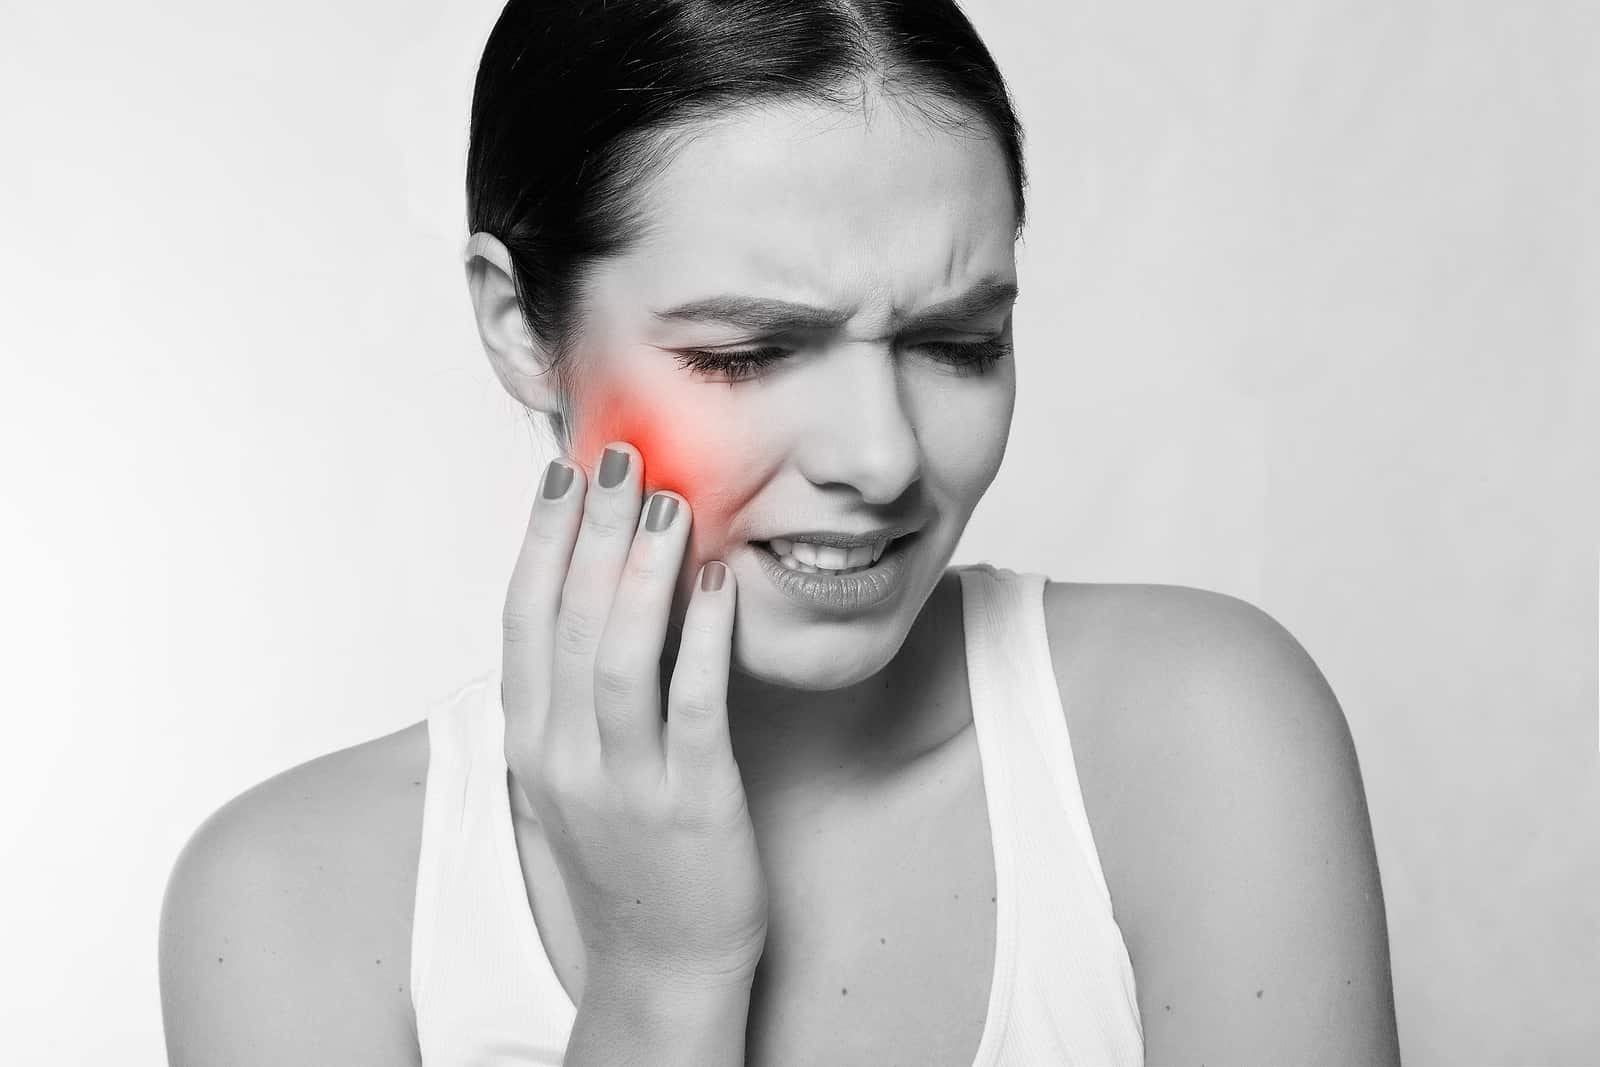 Болит челюсть после удаления зуба: причины, симптомы, что делать